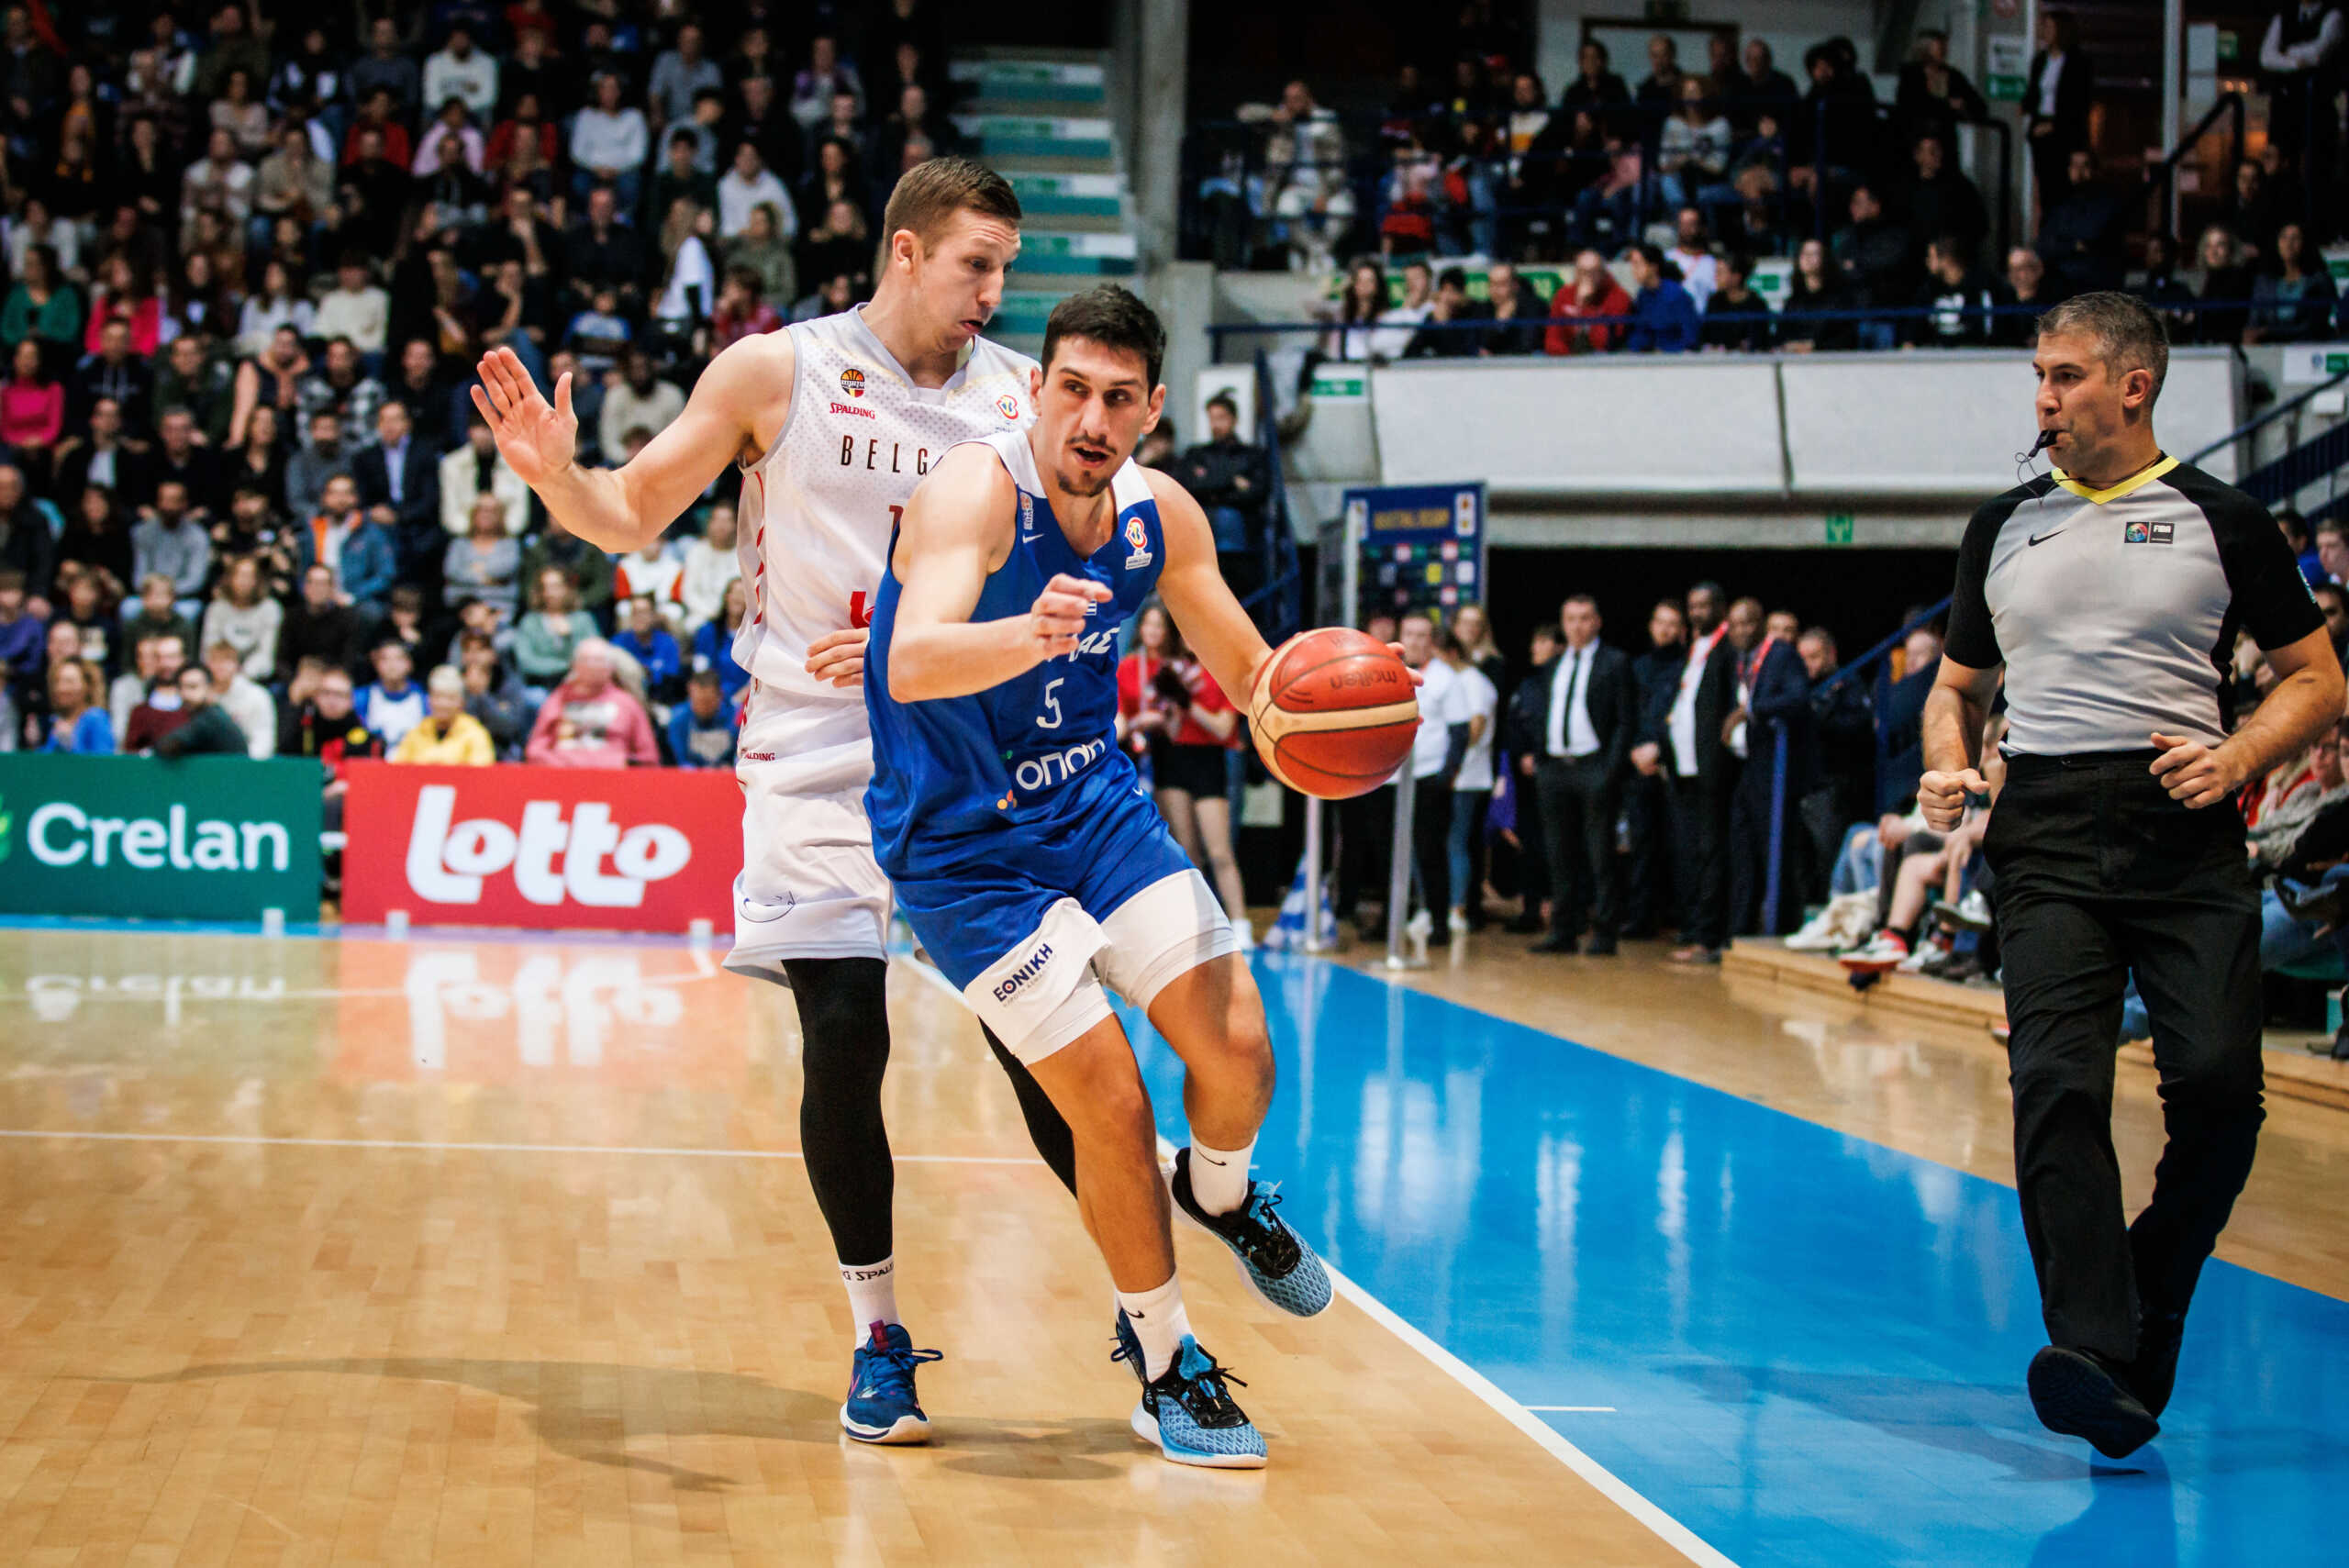 Εθνική Ελλάδας μπάσκετ: Το σόου του Γιαννούλη Λαρεντζάκη κόντρα στο Βέλγιο